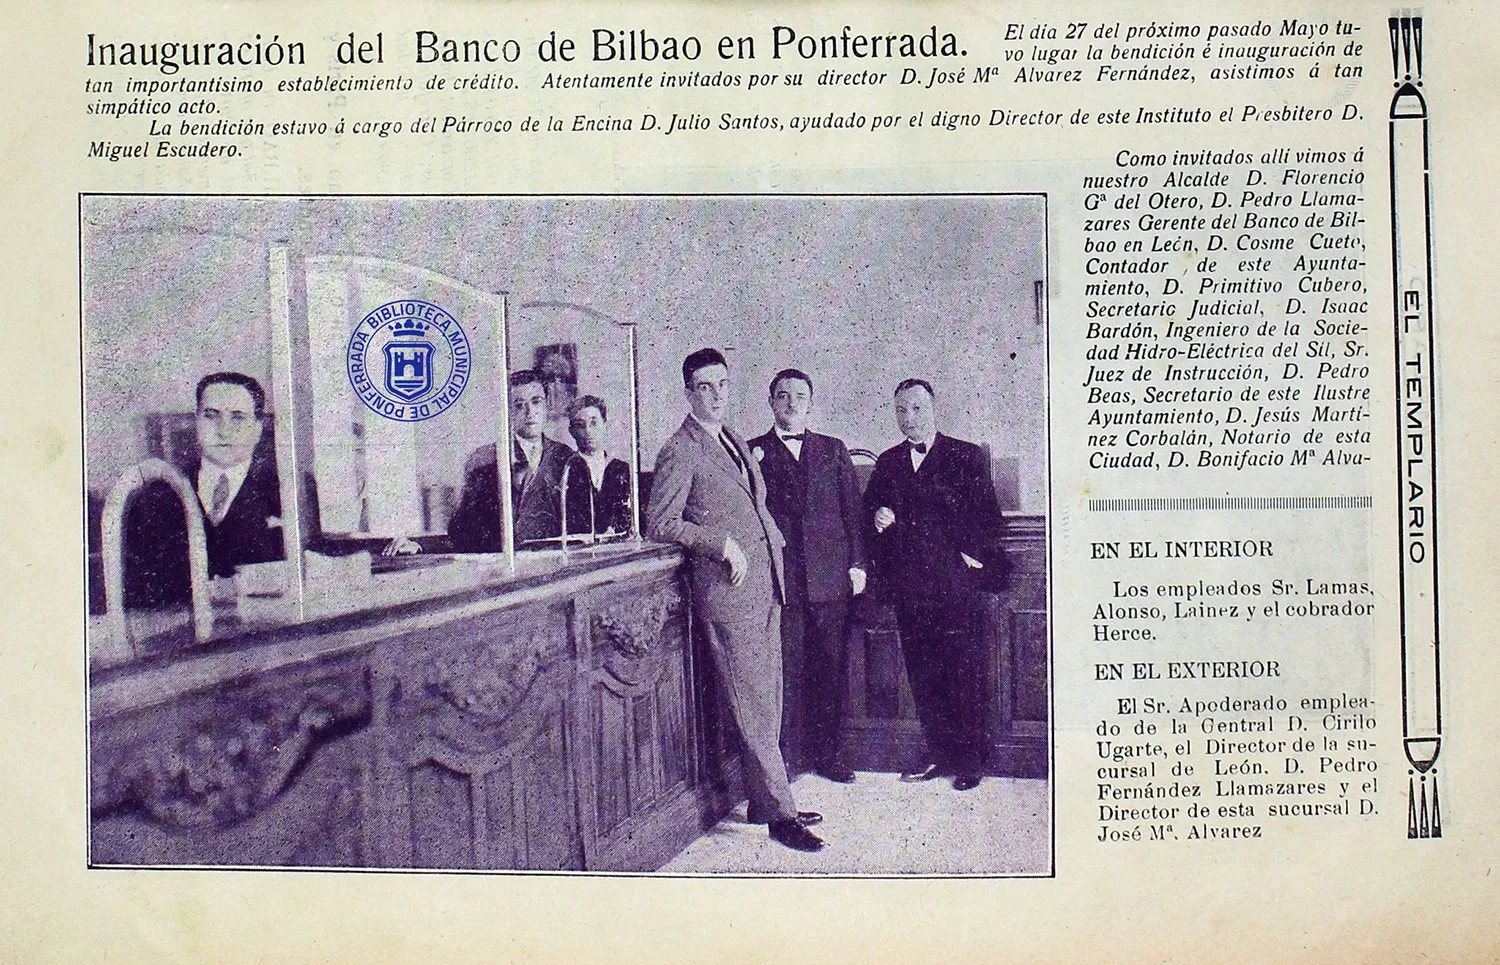 La biblioteca de Ponferrada 'desempolva' la inauguración del Banco de Bilbao en 1929